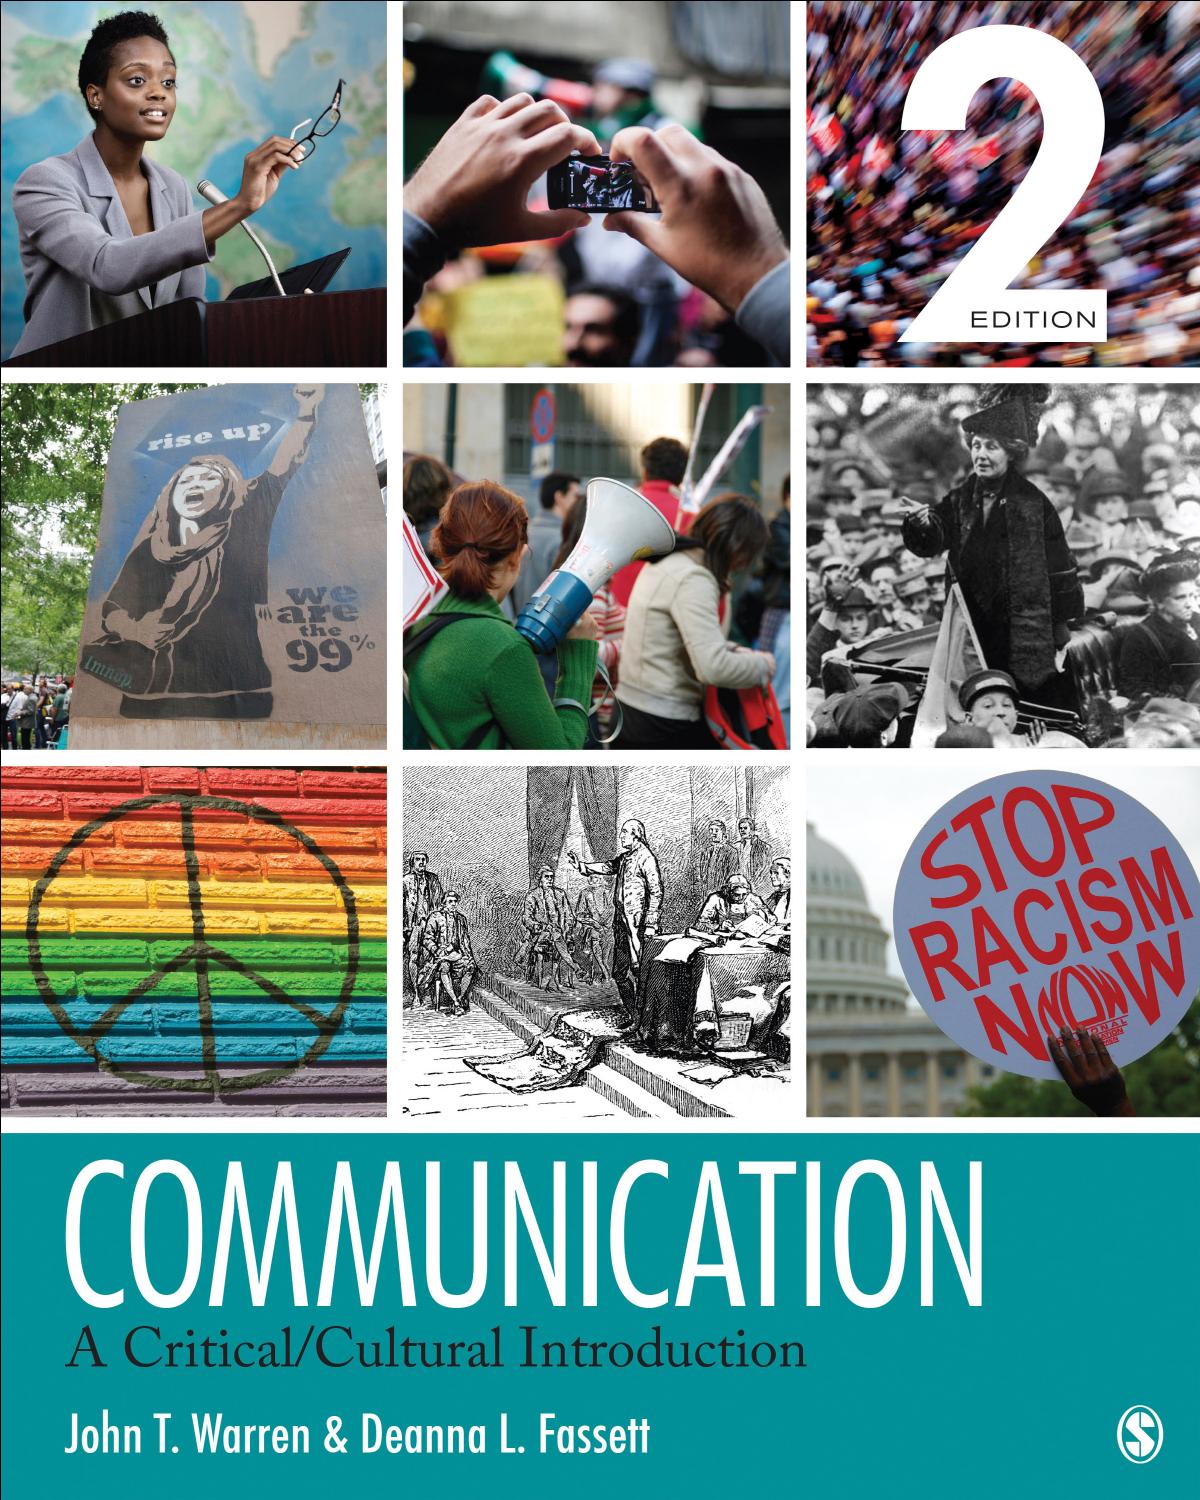 (eBook PDF)Communication: A Critical/Cultural Introduction 2nd Edition by John T. Warren,Deanna L. Fassett